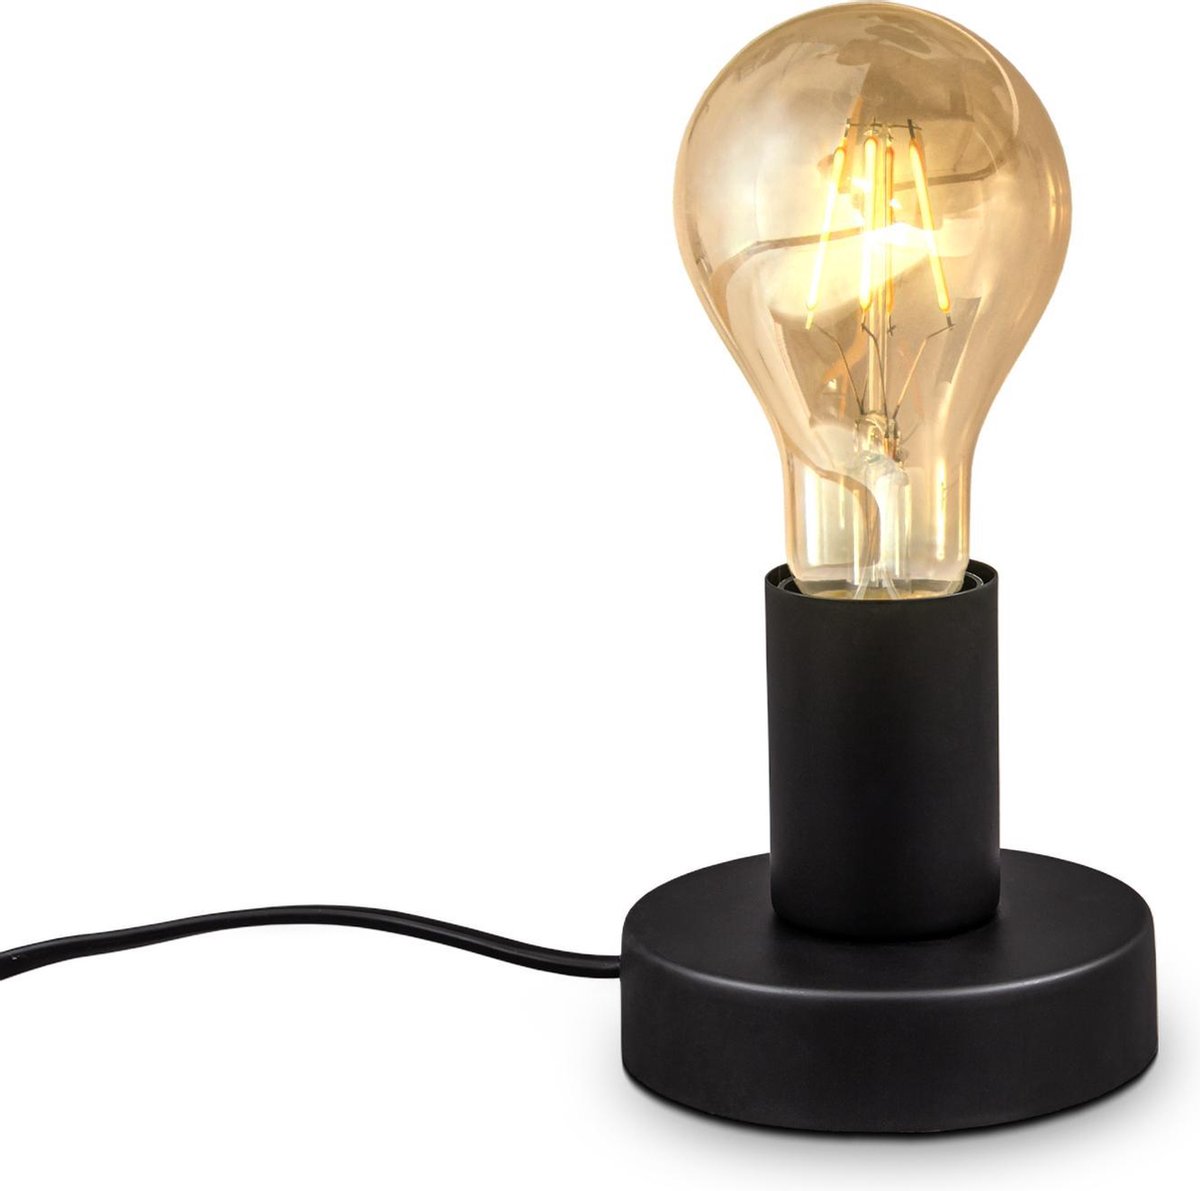 B.K.Licht - Industriële Tafellamp - met retro design - bedlamp voor binnen - aan/uit schakelaar - Ø10cm - E27 fitting - excl. lichtbron